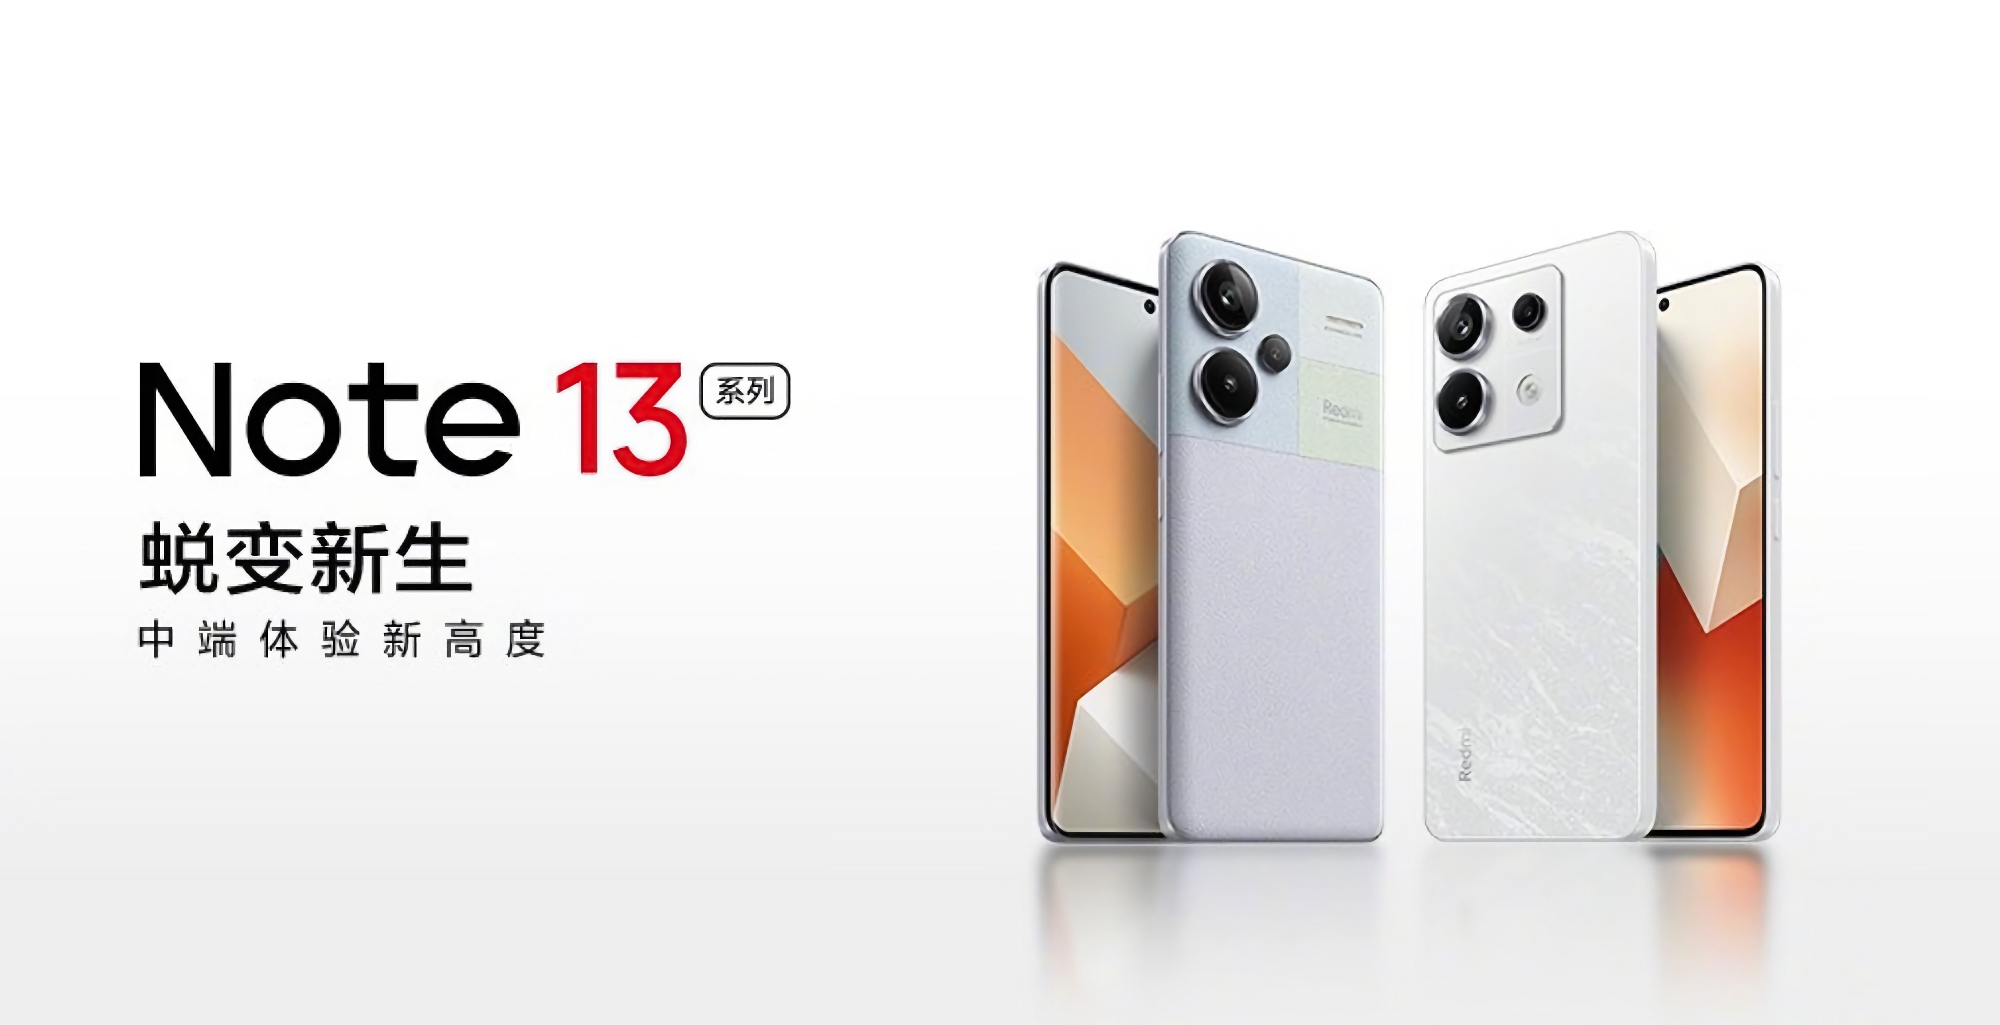 Ya es oficial: Xiaomi presentará la gama de smartphones Redmi Note 13 el 21 de septiembre